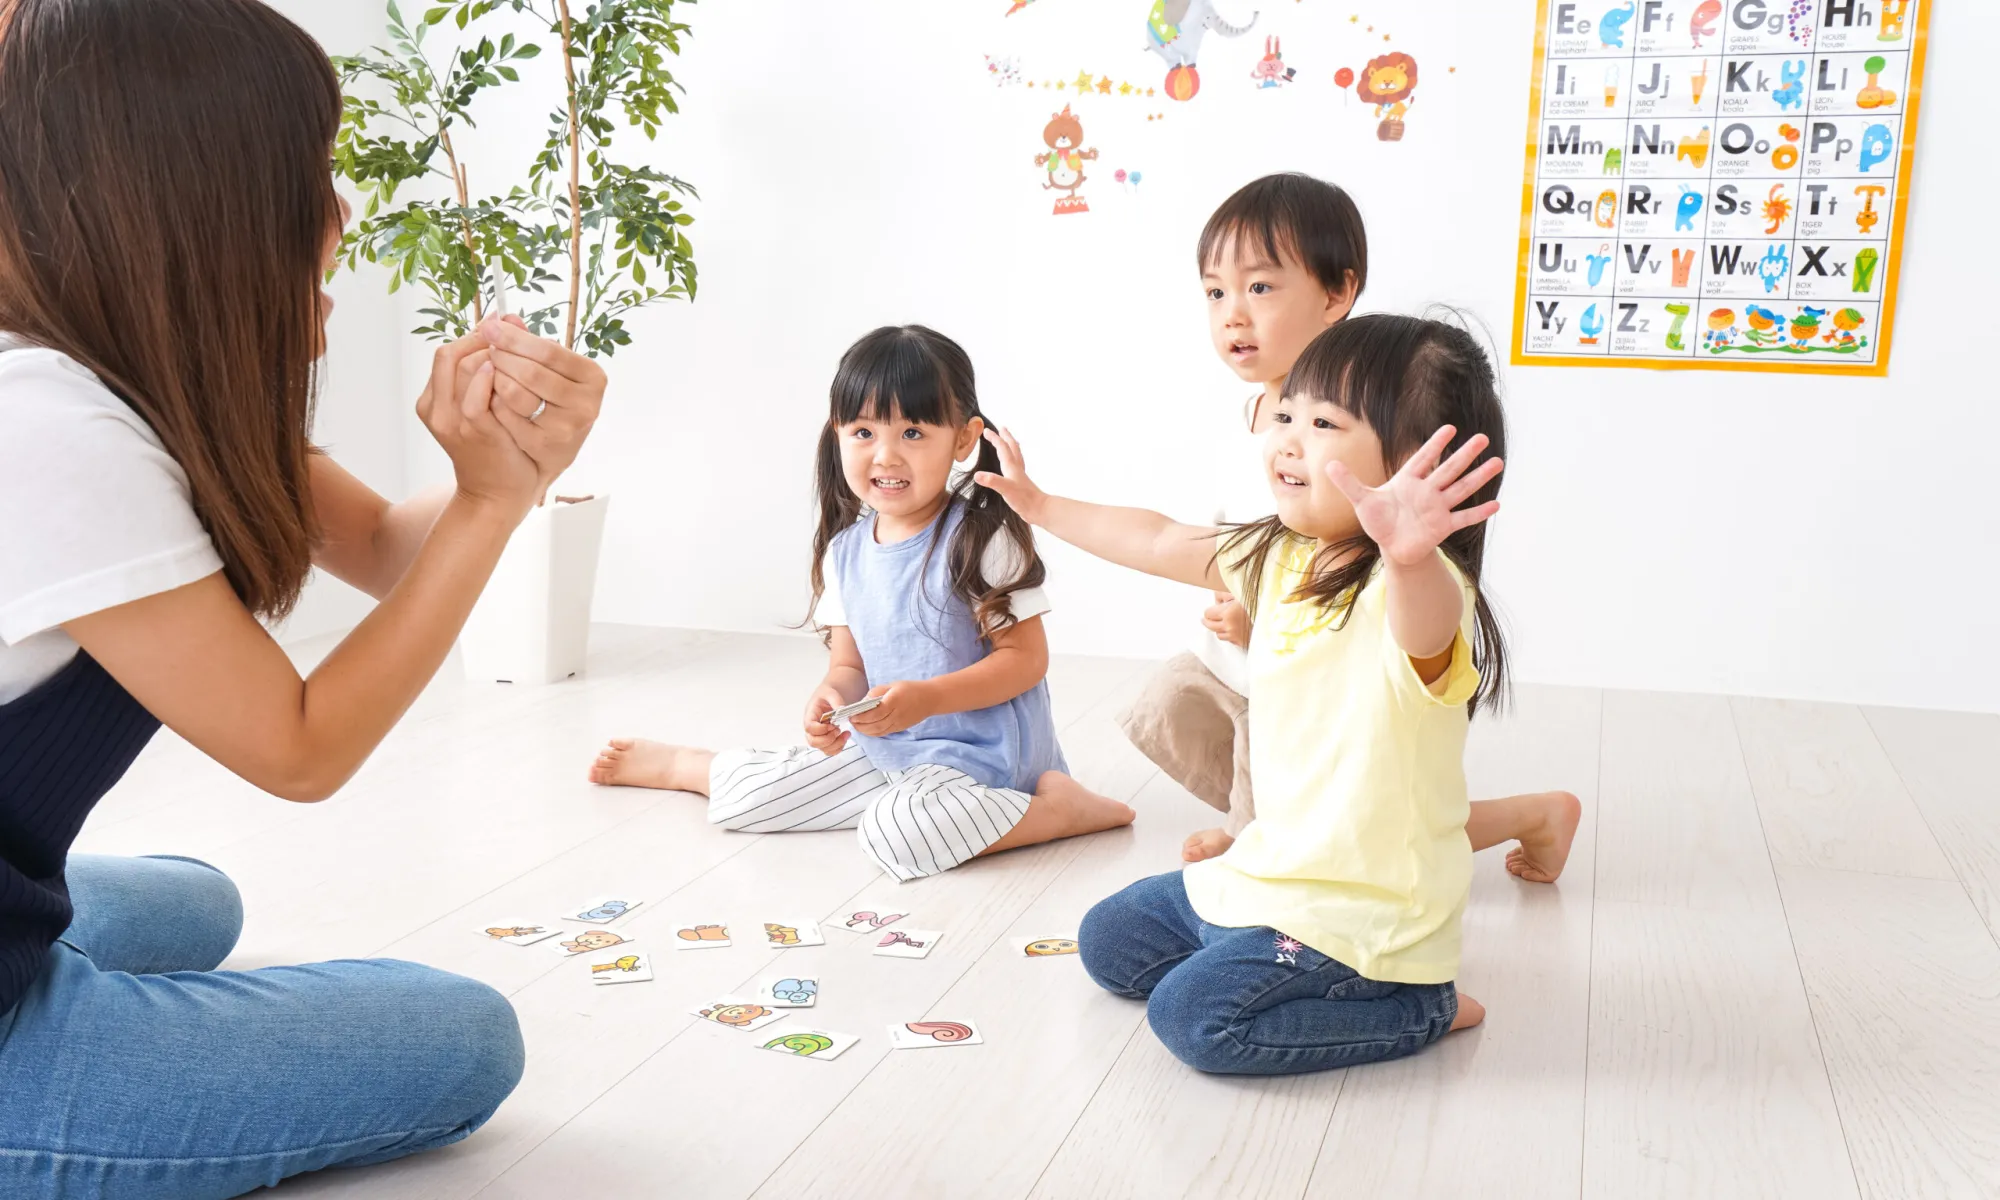 a Let’s play! Des jeux pour apprendre l’anglais avec les enfants